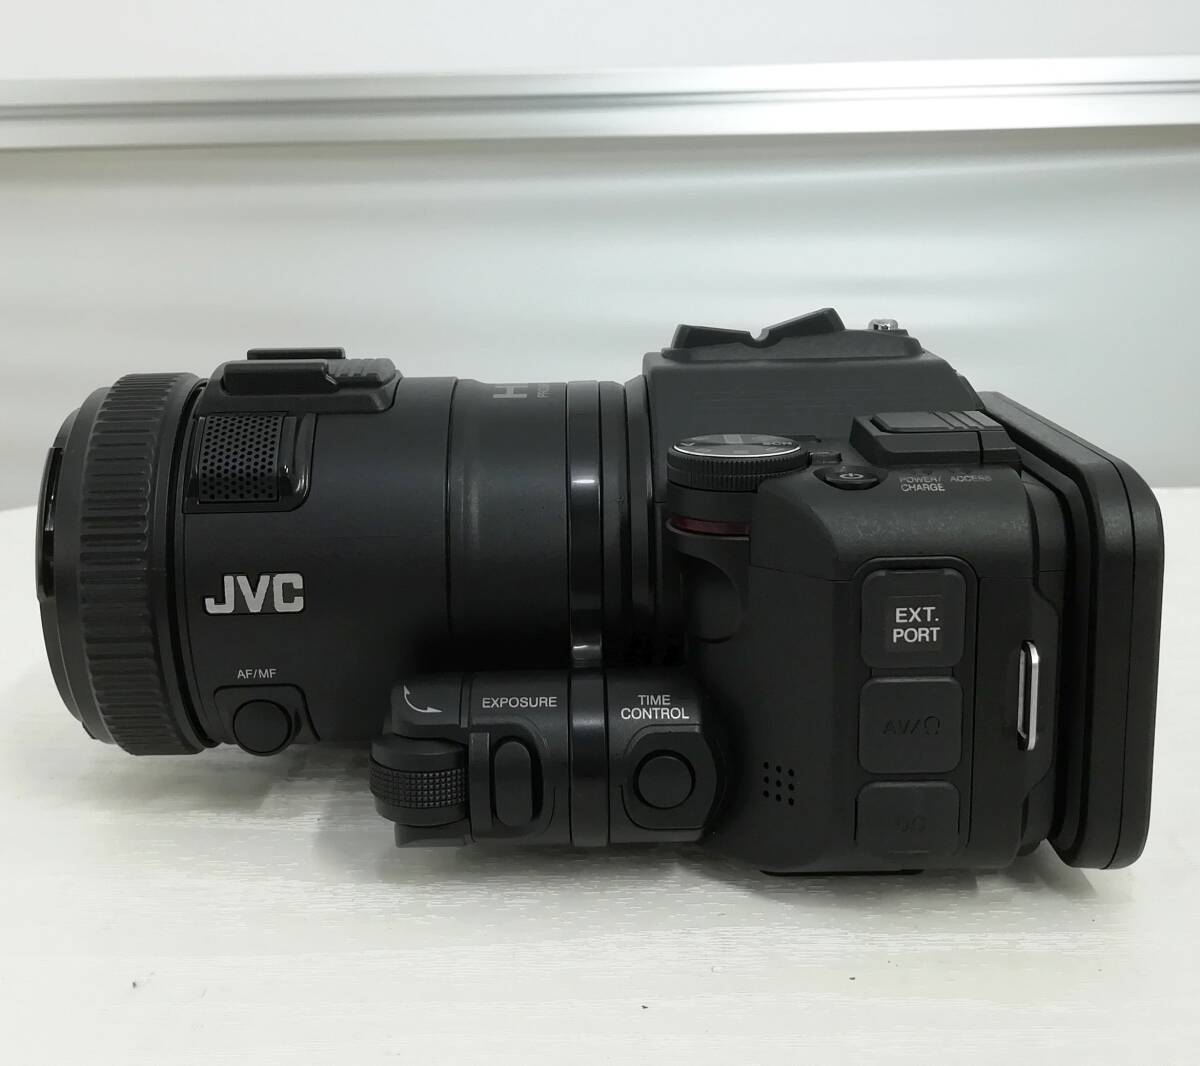 【ジャンク】JVC GC-LJ25B2 スポーツ コーチング カメラ システム対応 ビデオカメラ 2015年製 液晶不良 パーツ 修理 即日発送【H24042415】_画像6